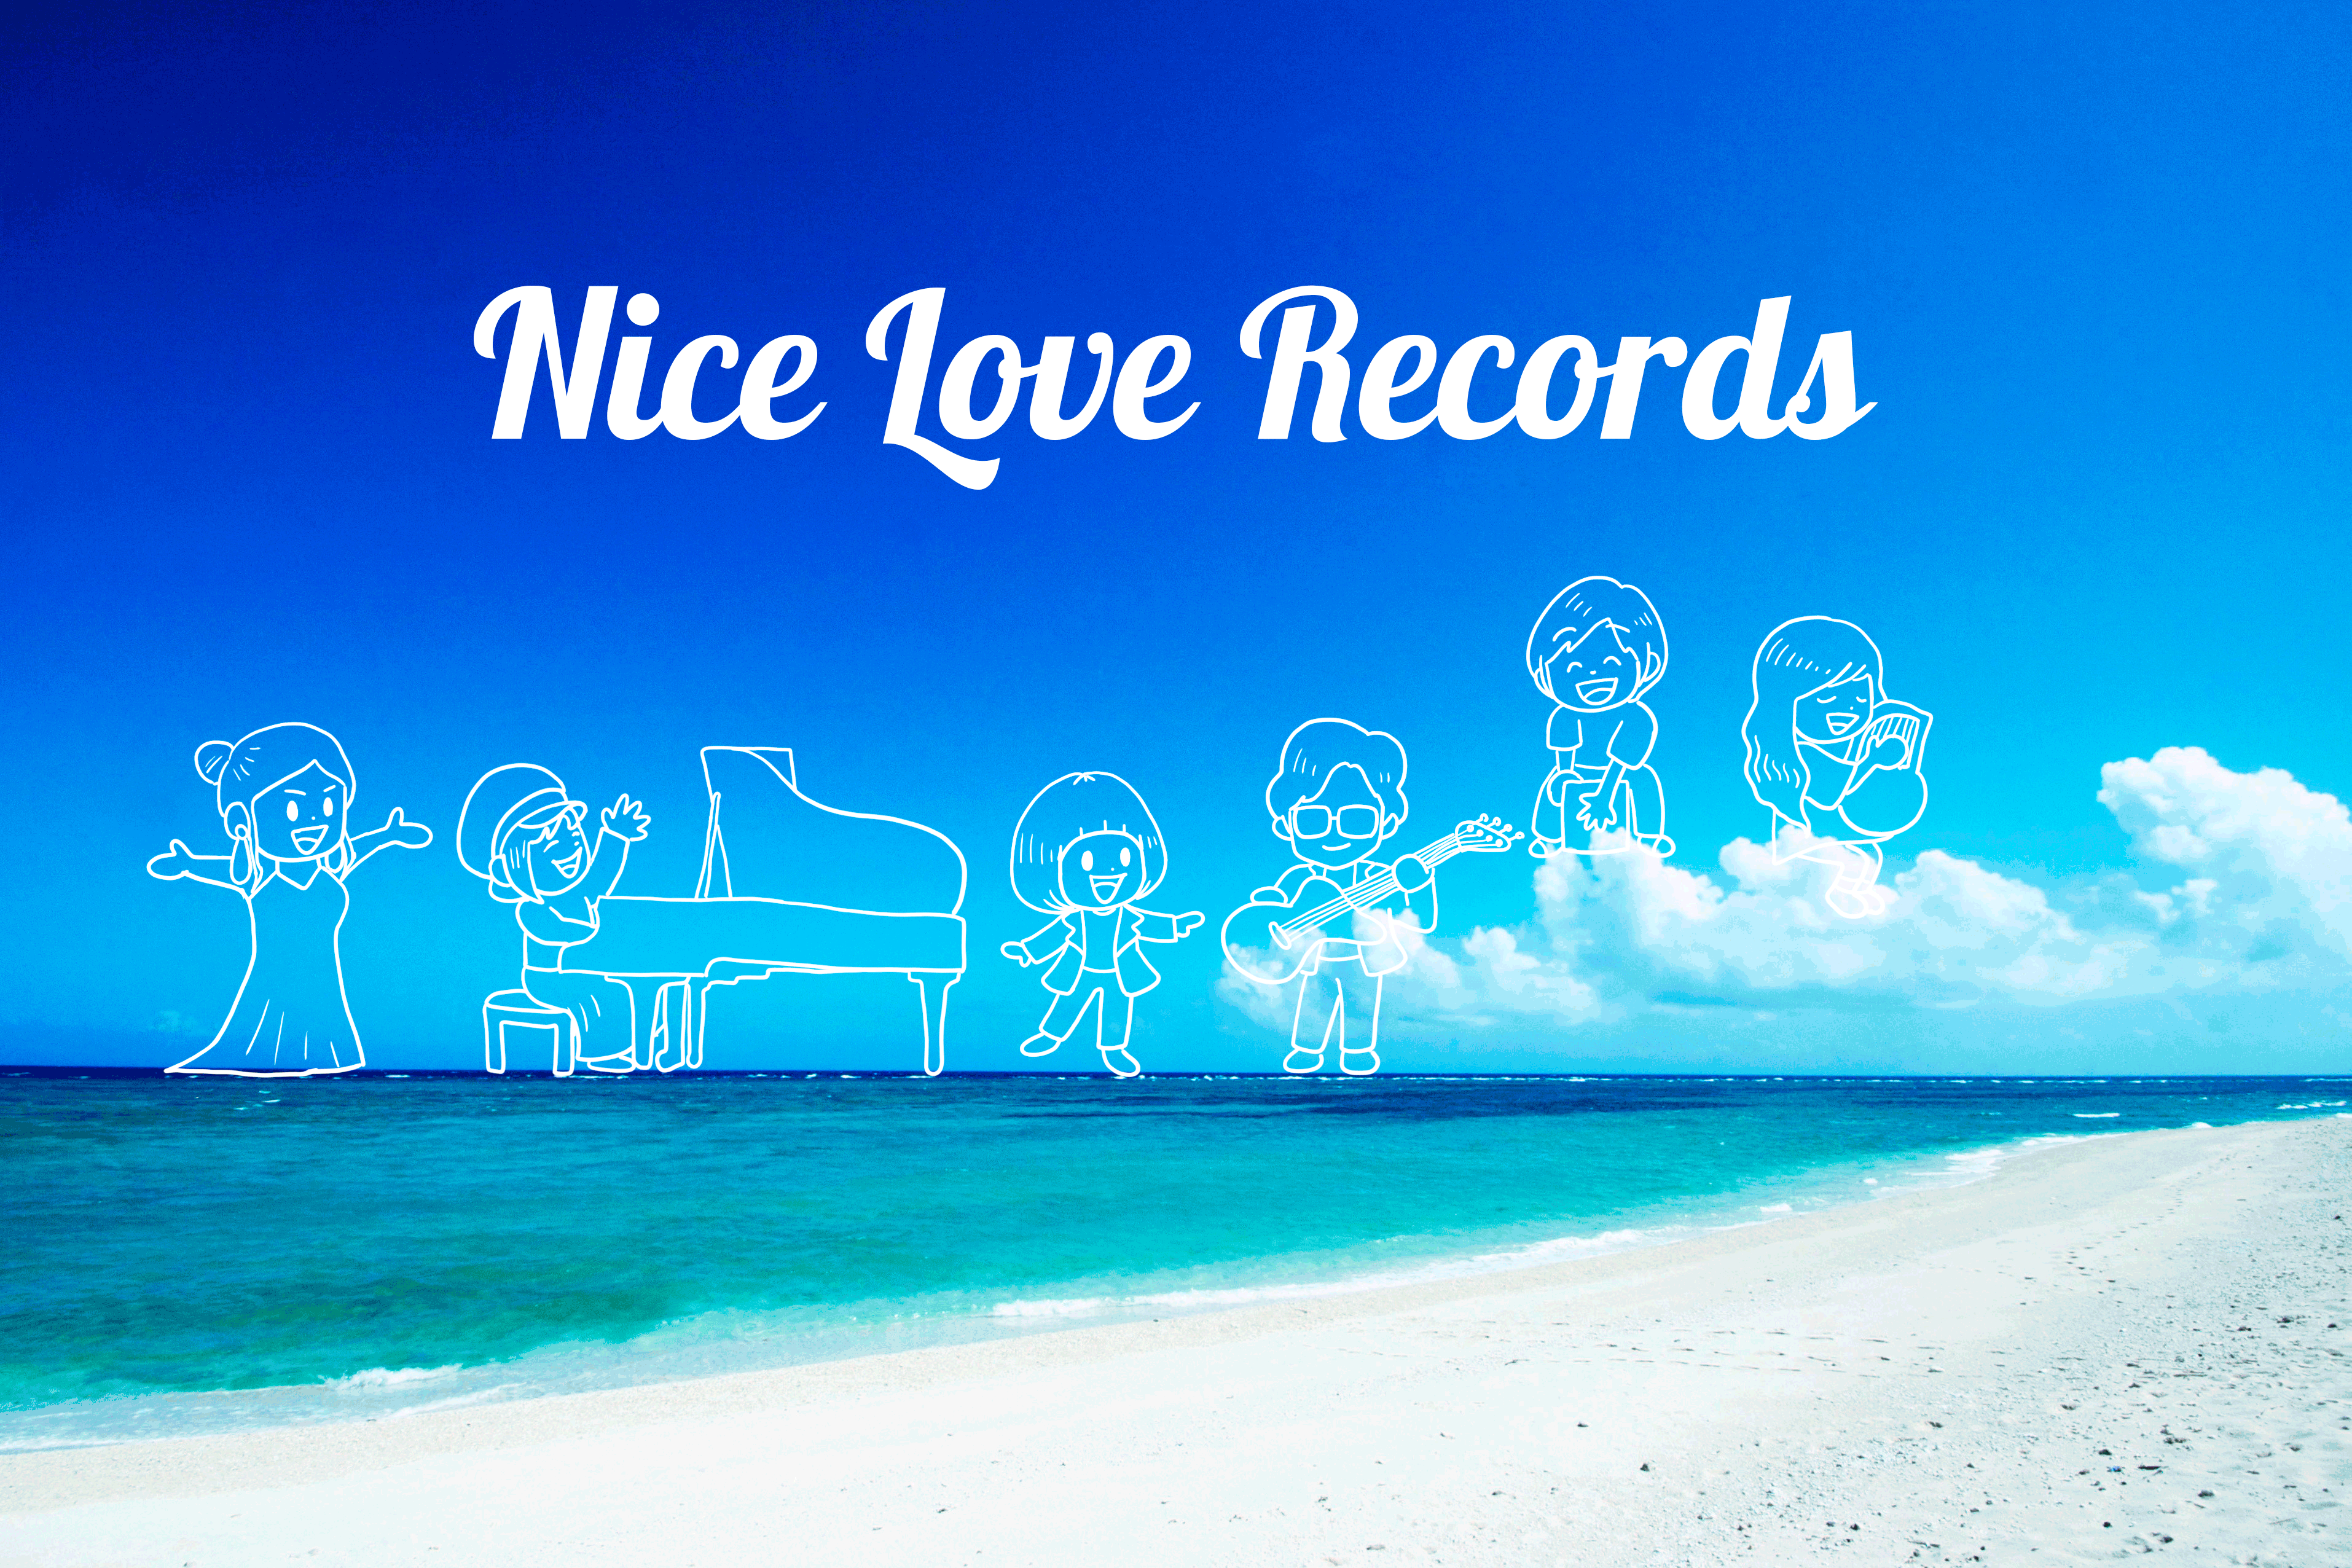 Nice Love Recordsサイトのメインビジュアル画像。おかっぱミユキとメガネズ、キラキラみさこ、愛歌など、所属アーティストたちのイラストが、海の写真の上に描かれている。